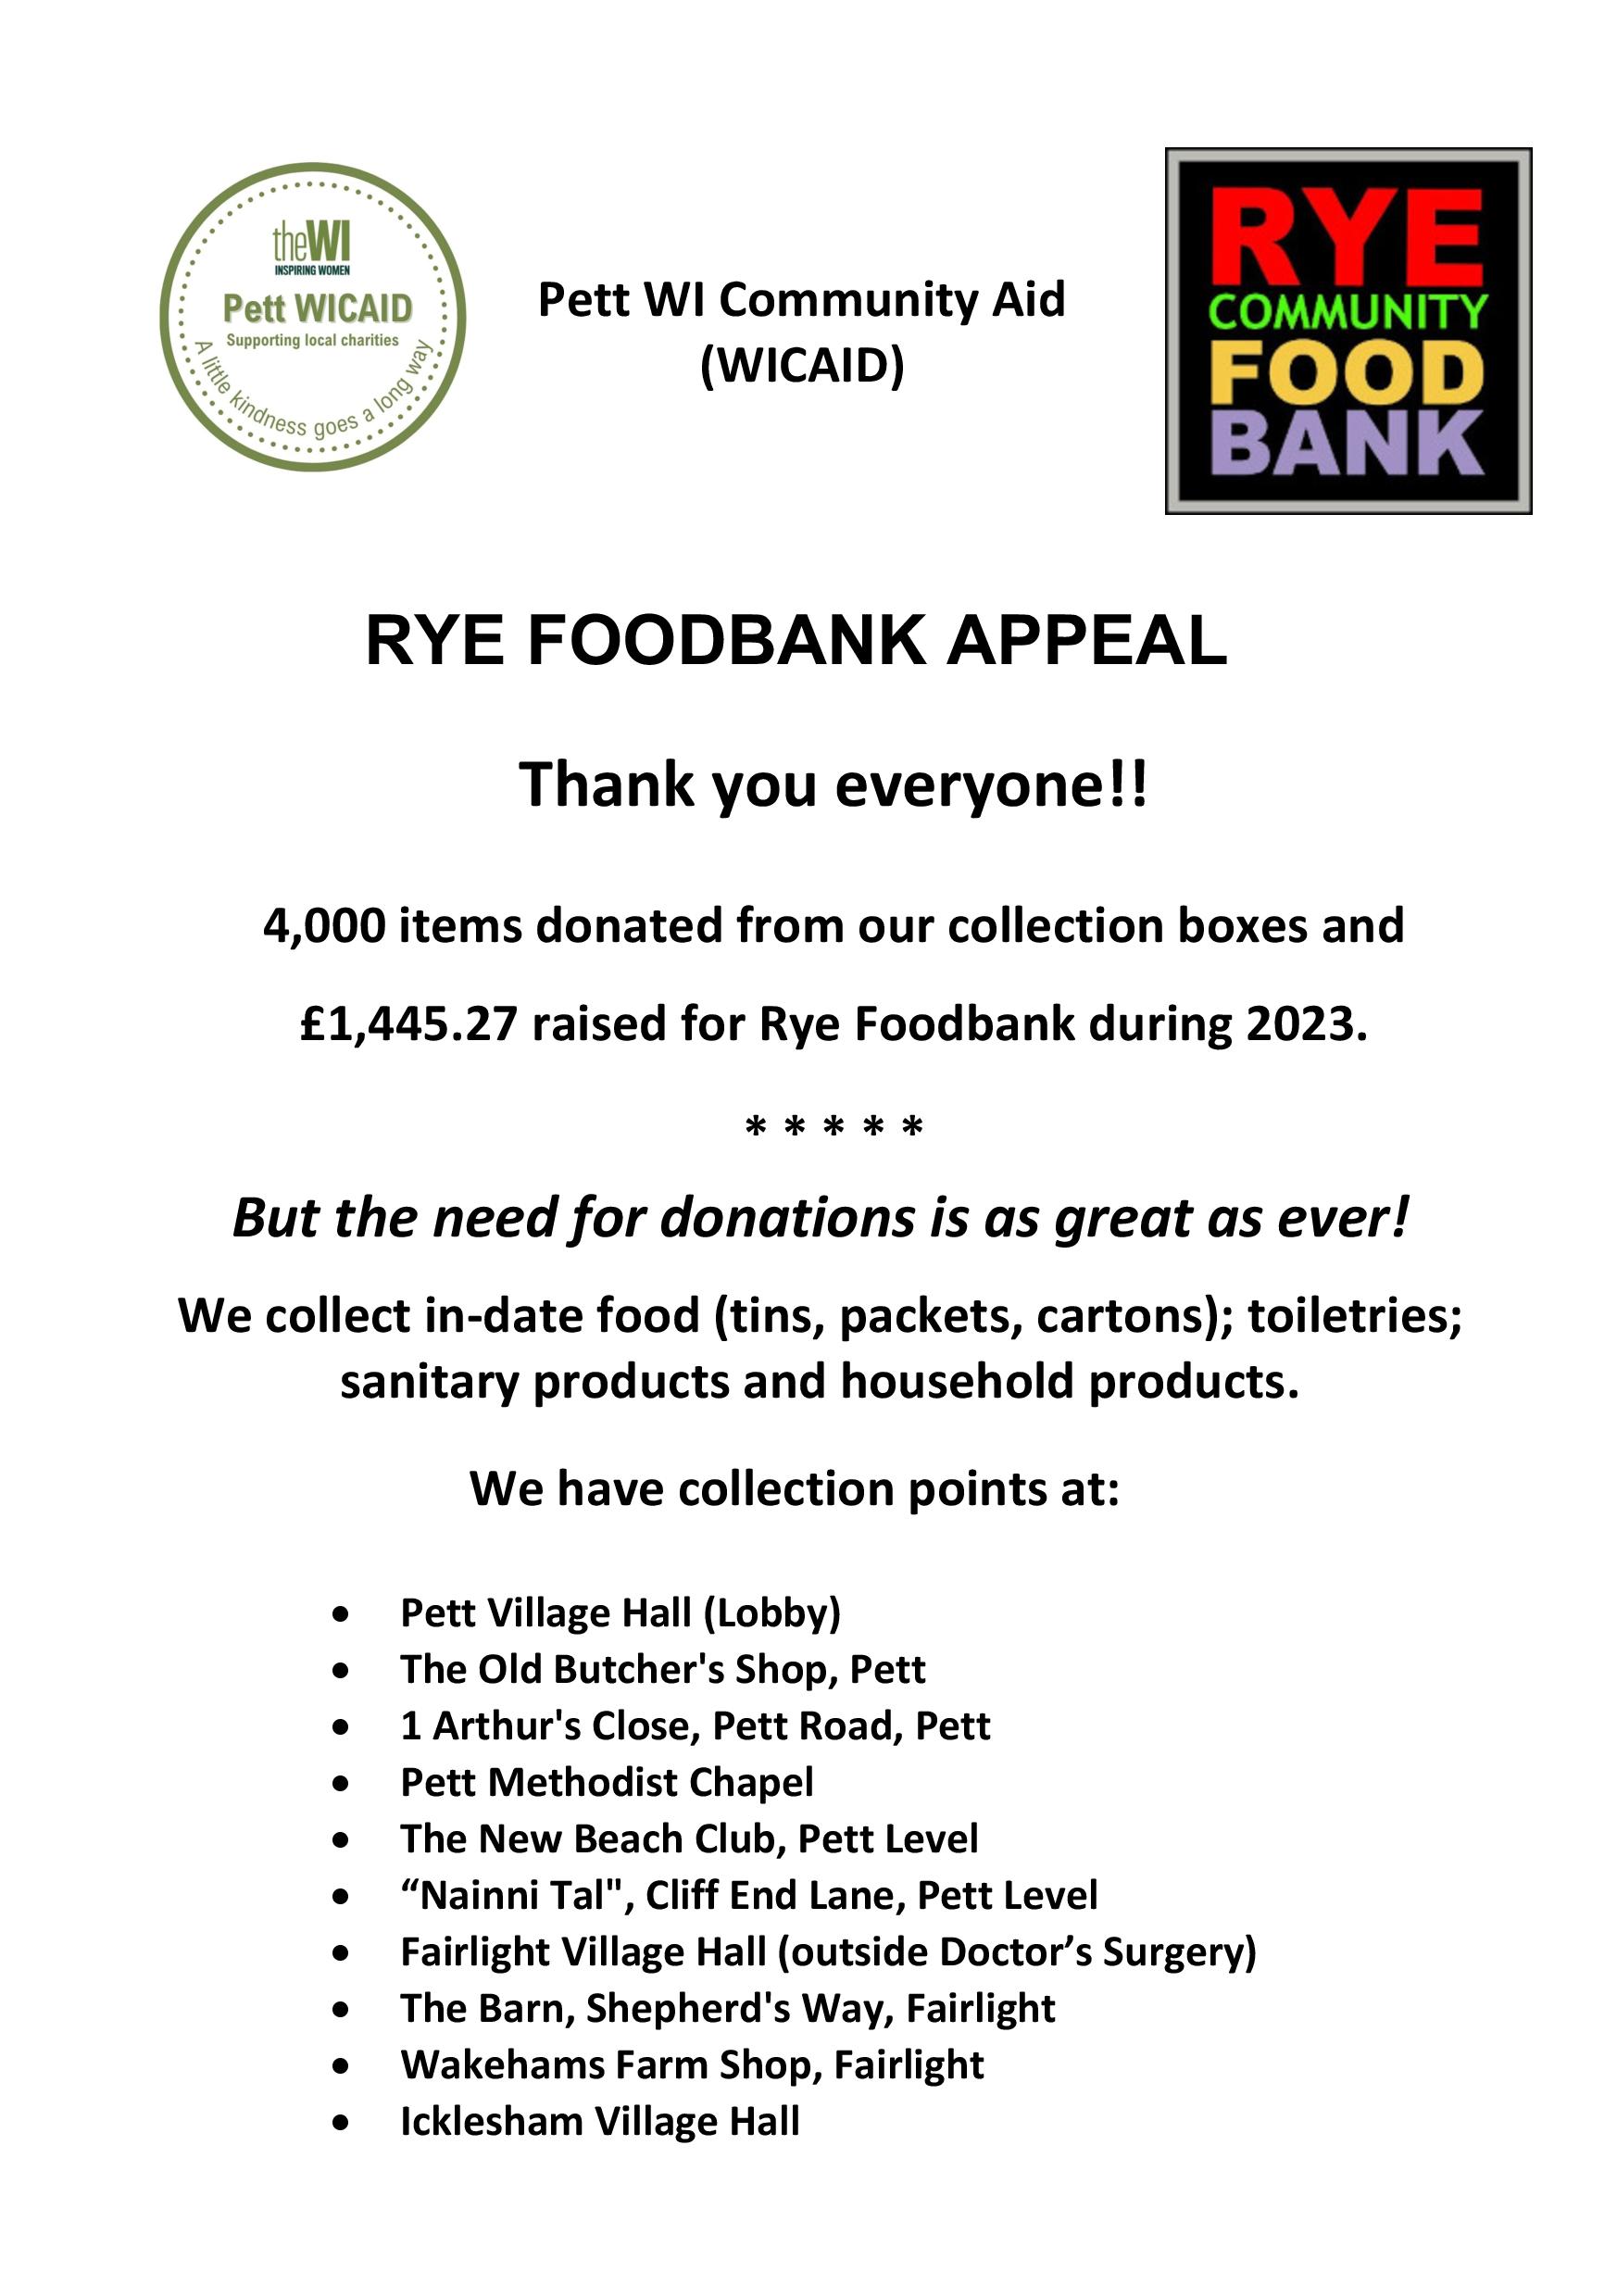 Pett WI Rye Foodbank Appeal